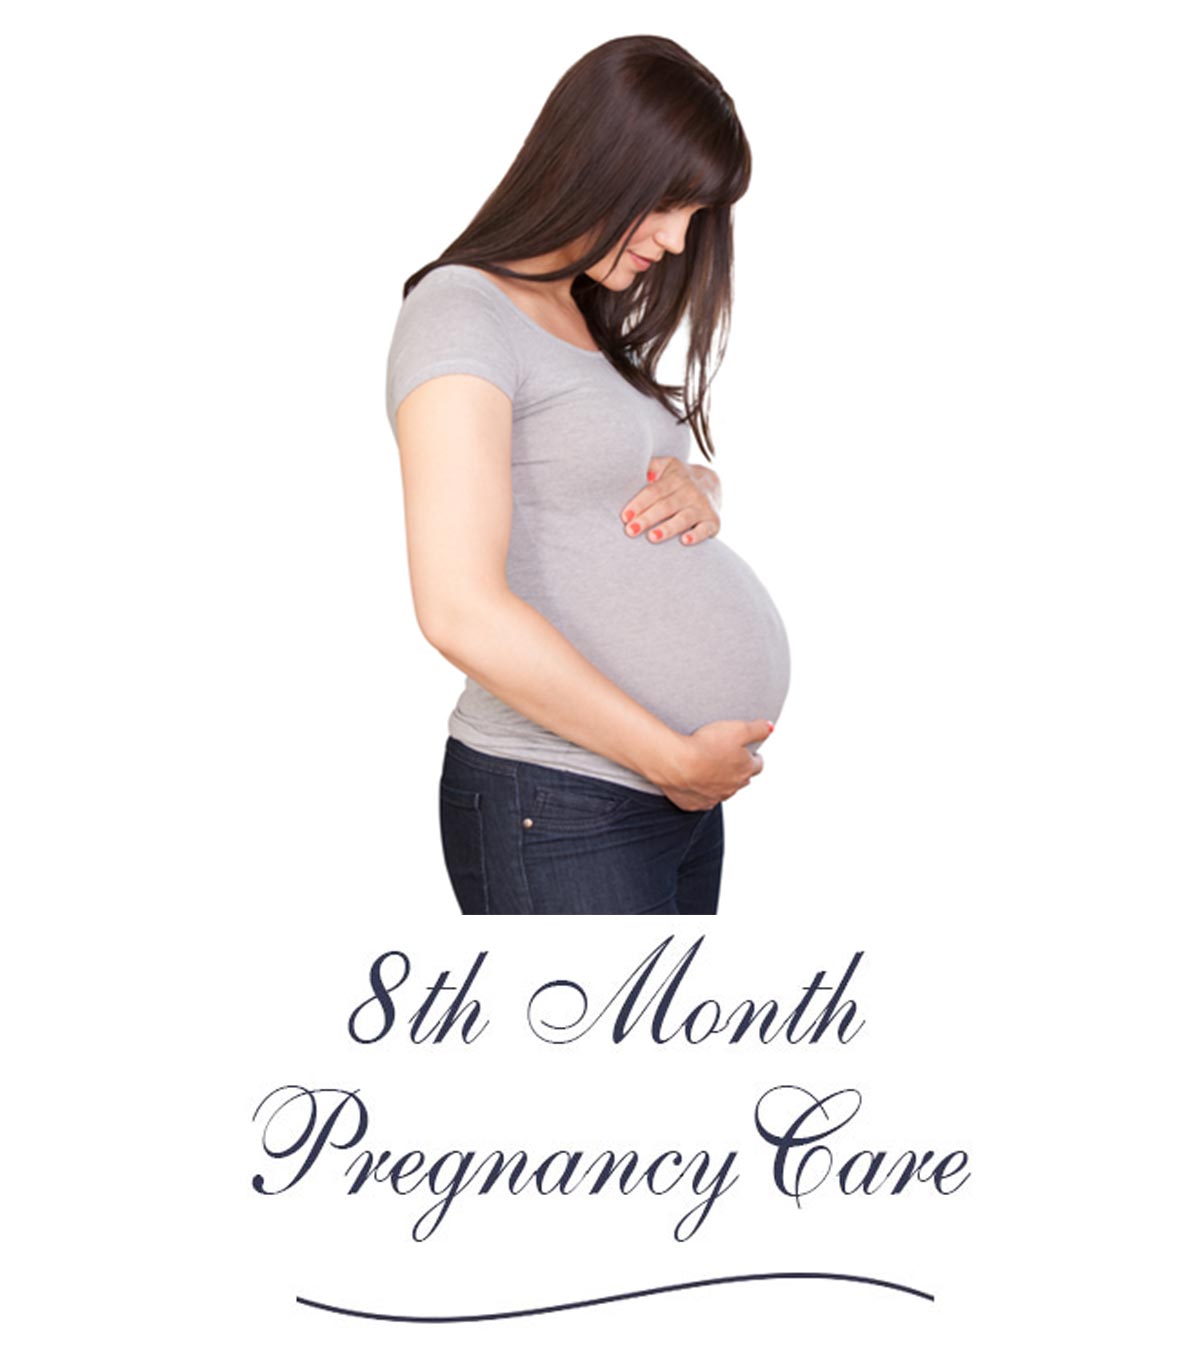 怀孕8个月:症状、身体变化和婴儿发育